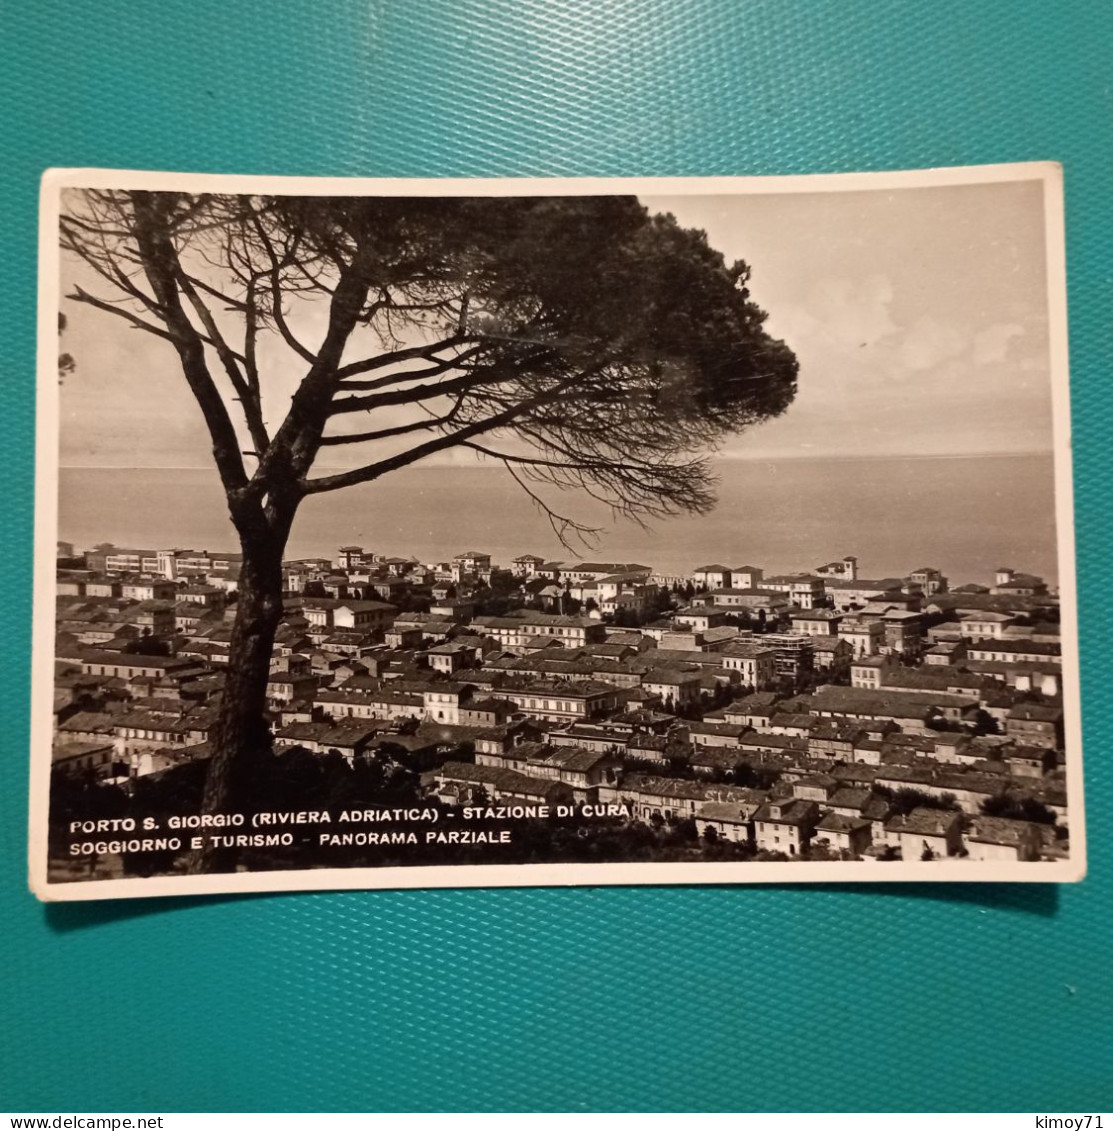 Cartolina Porto S. Giorgio - Staz. Di Cura - Soggiorno E Turismo - Panorama Parziale. Viaggiata 1949 - Fermo